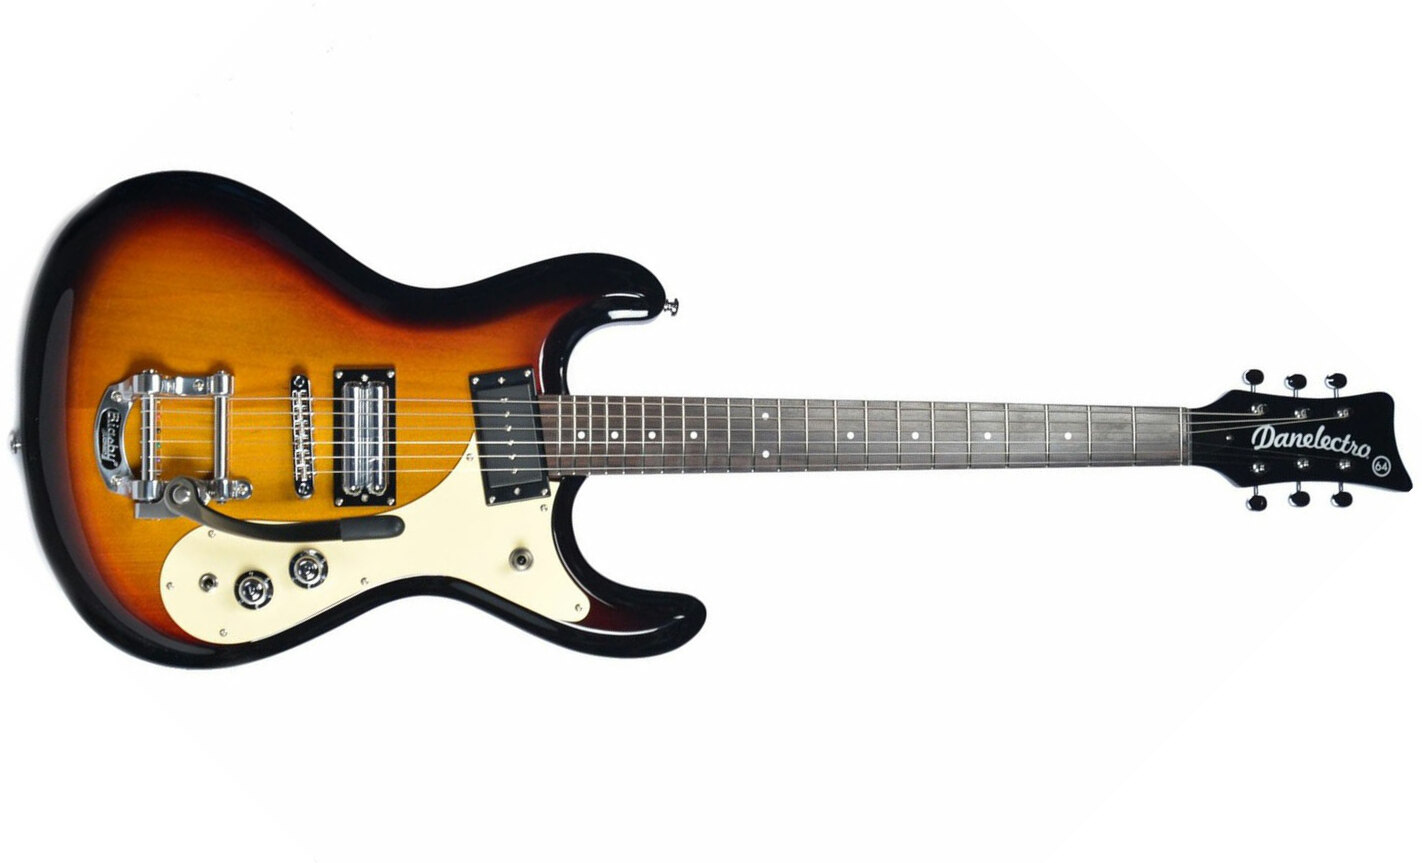 Danelectro The 64 Guitar Hs Trem Rw - Sunburst - Double cut electric guitar - Main picture